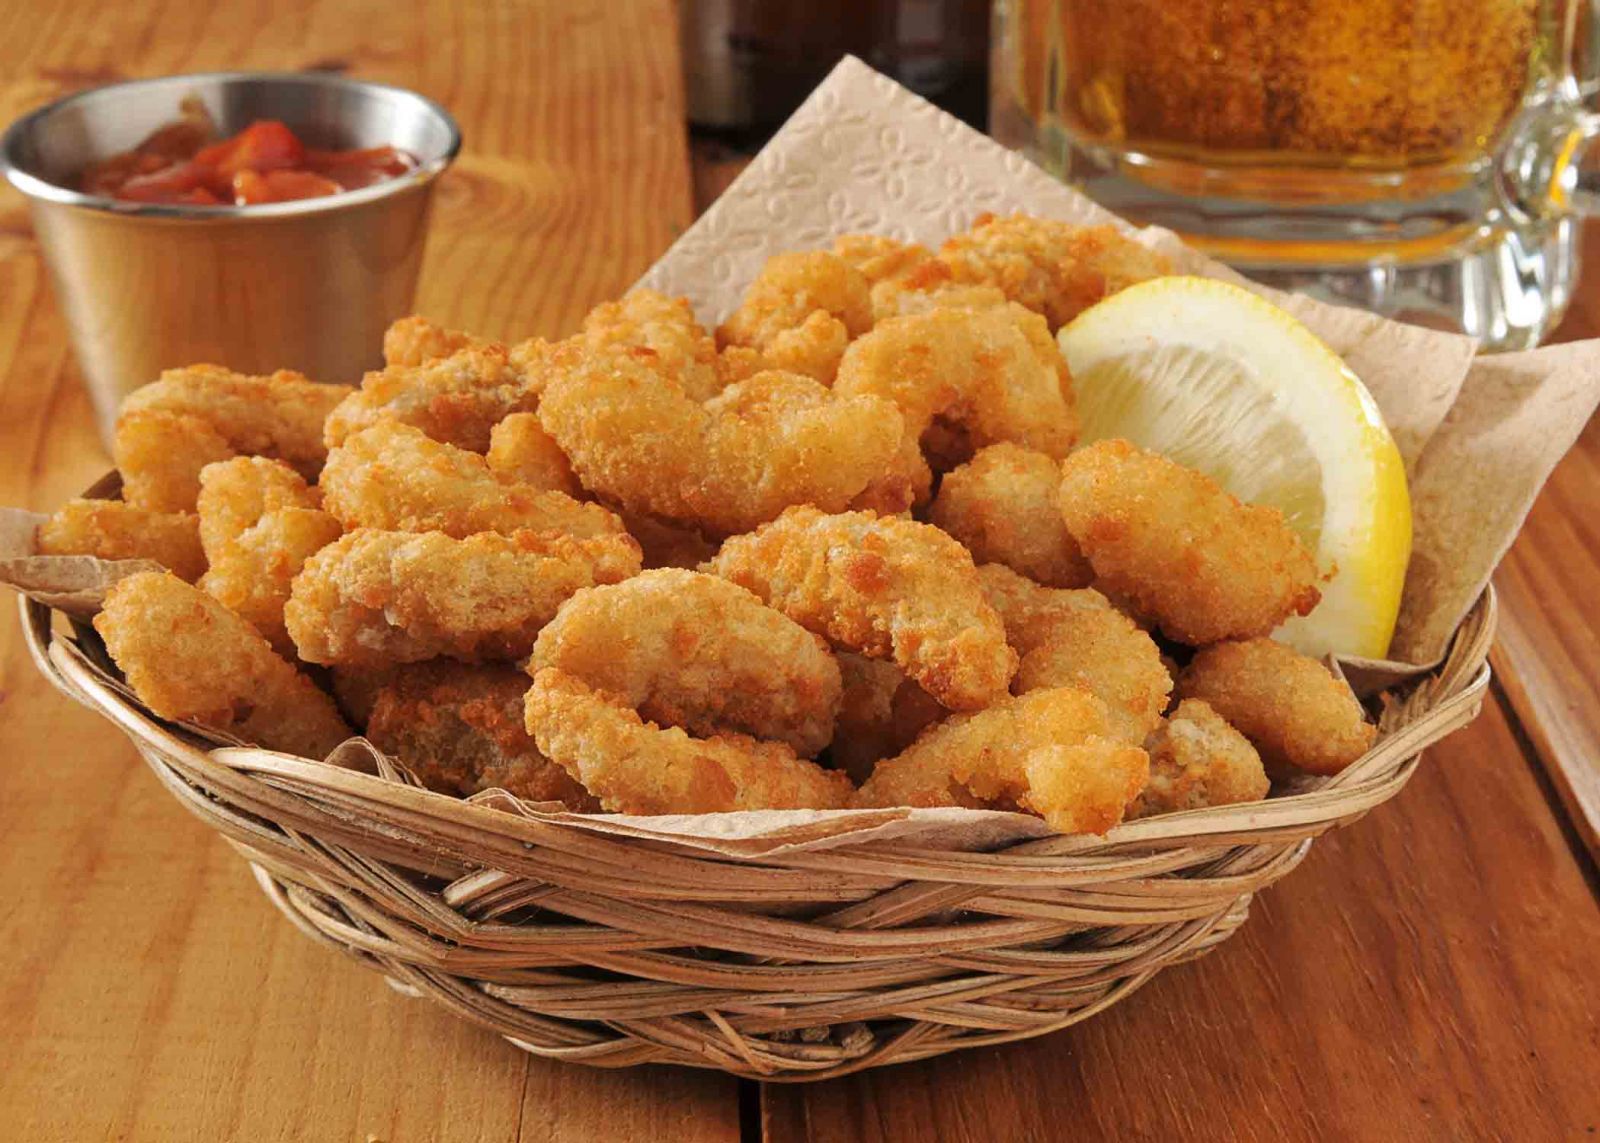 Fried shrimp basket